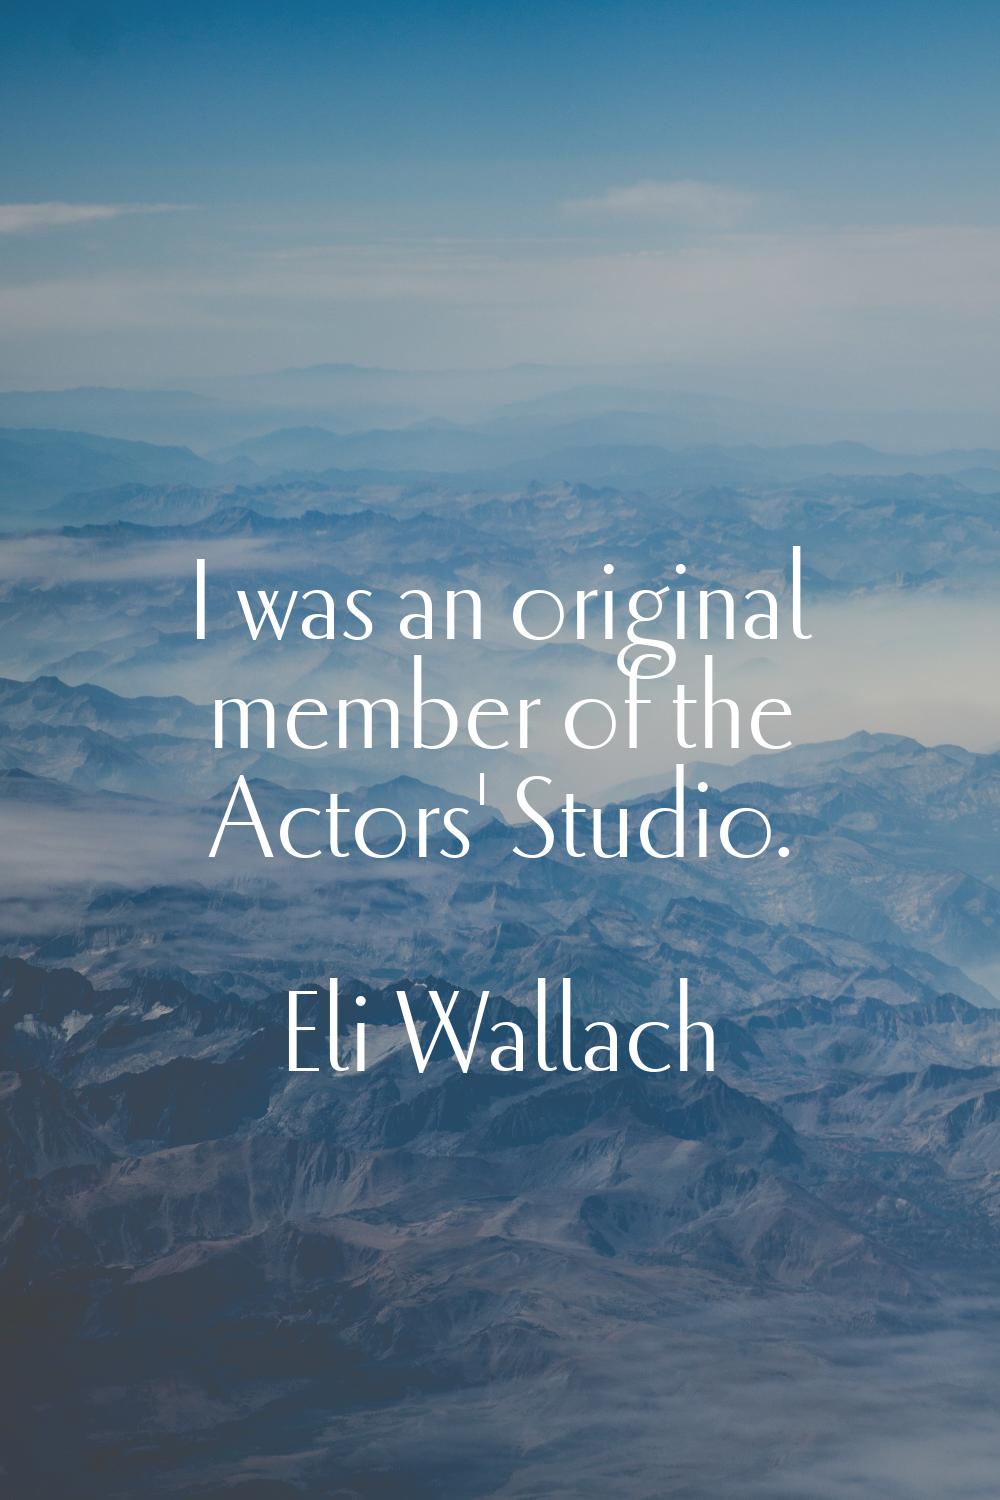 I was an original member of the Actors' Studio.